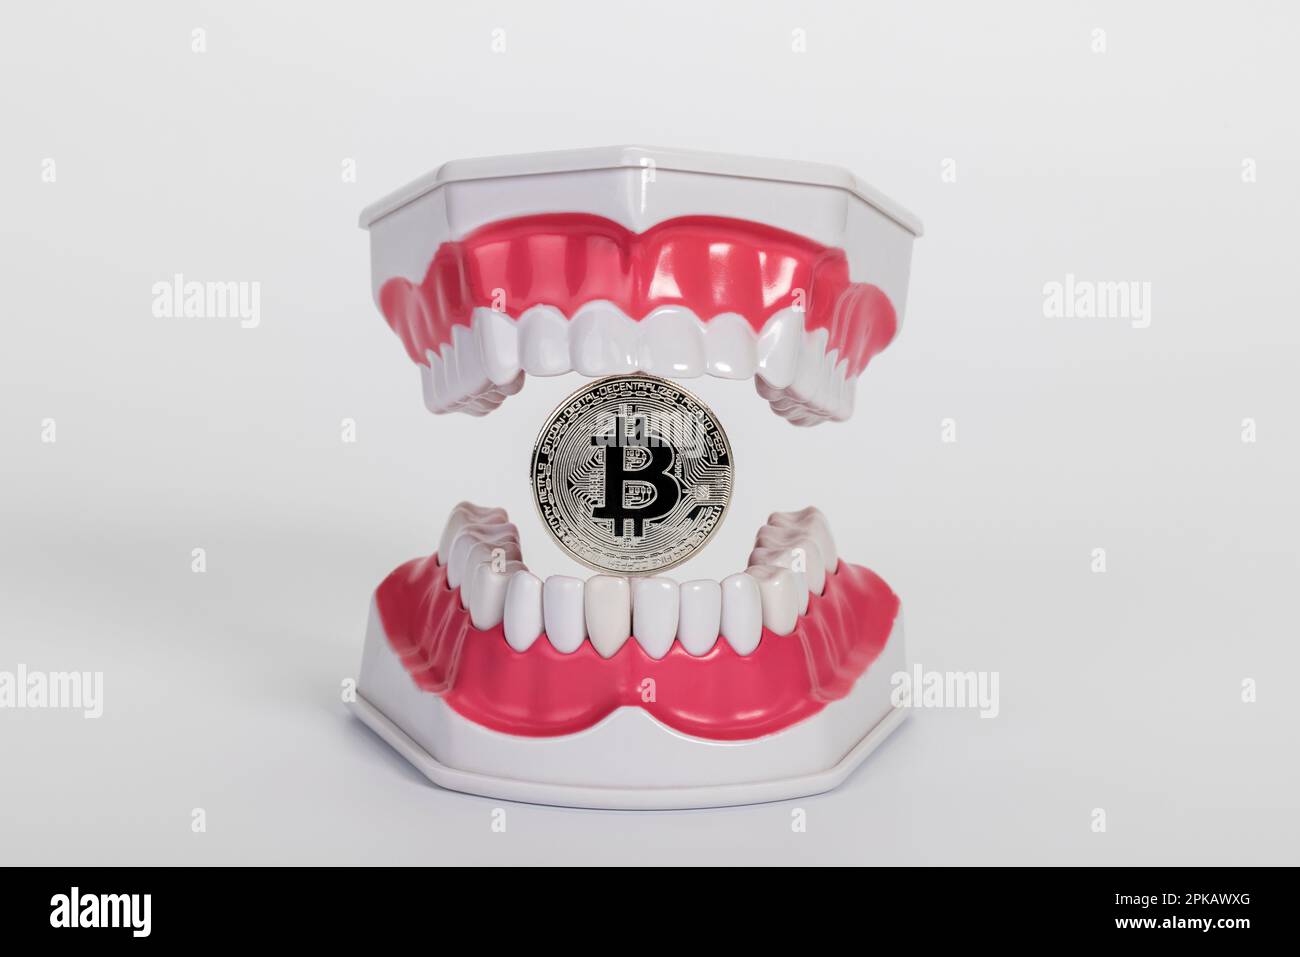 Modello di cura dentale aperto, con una moneta bitcoin, immagine simbolo, metodo di pagamento, moneta digitale, criptovaluta, sfondo bianco, Foto Stock